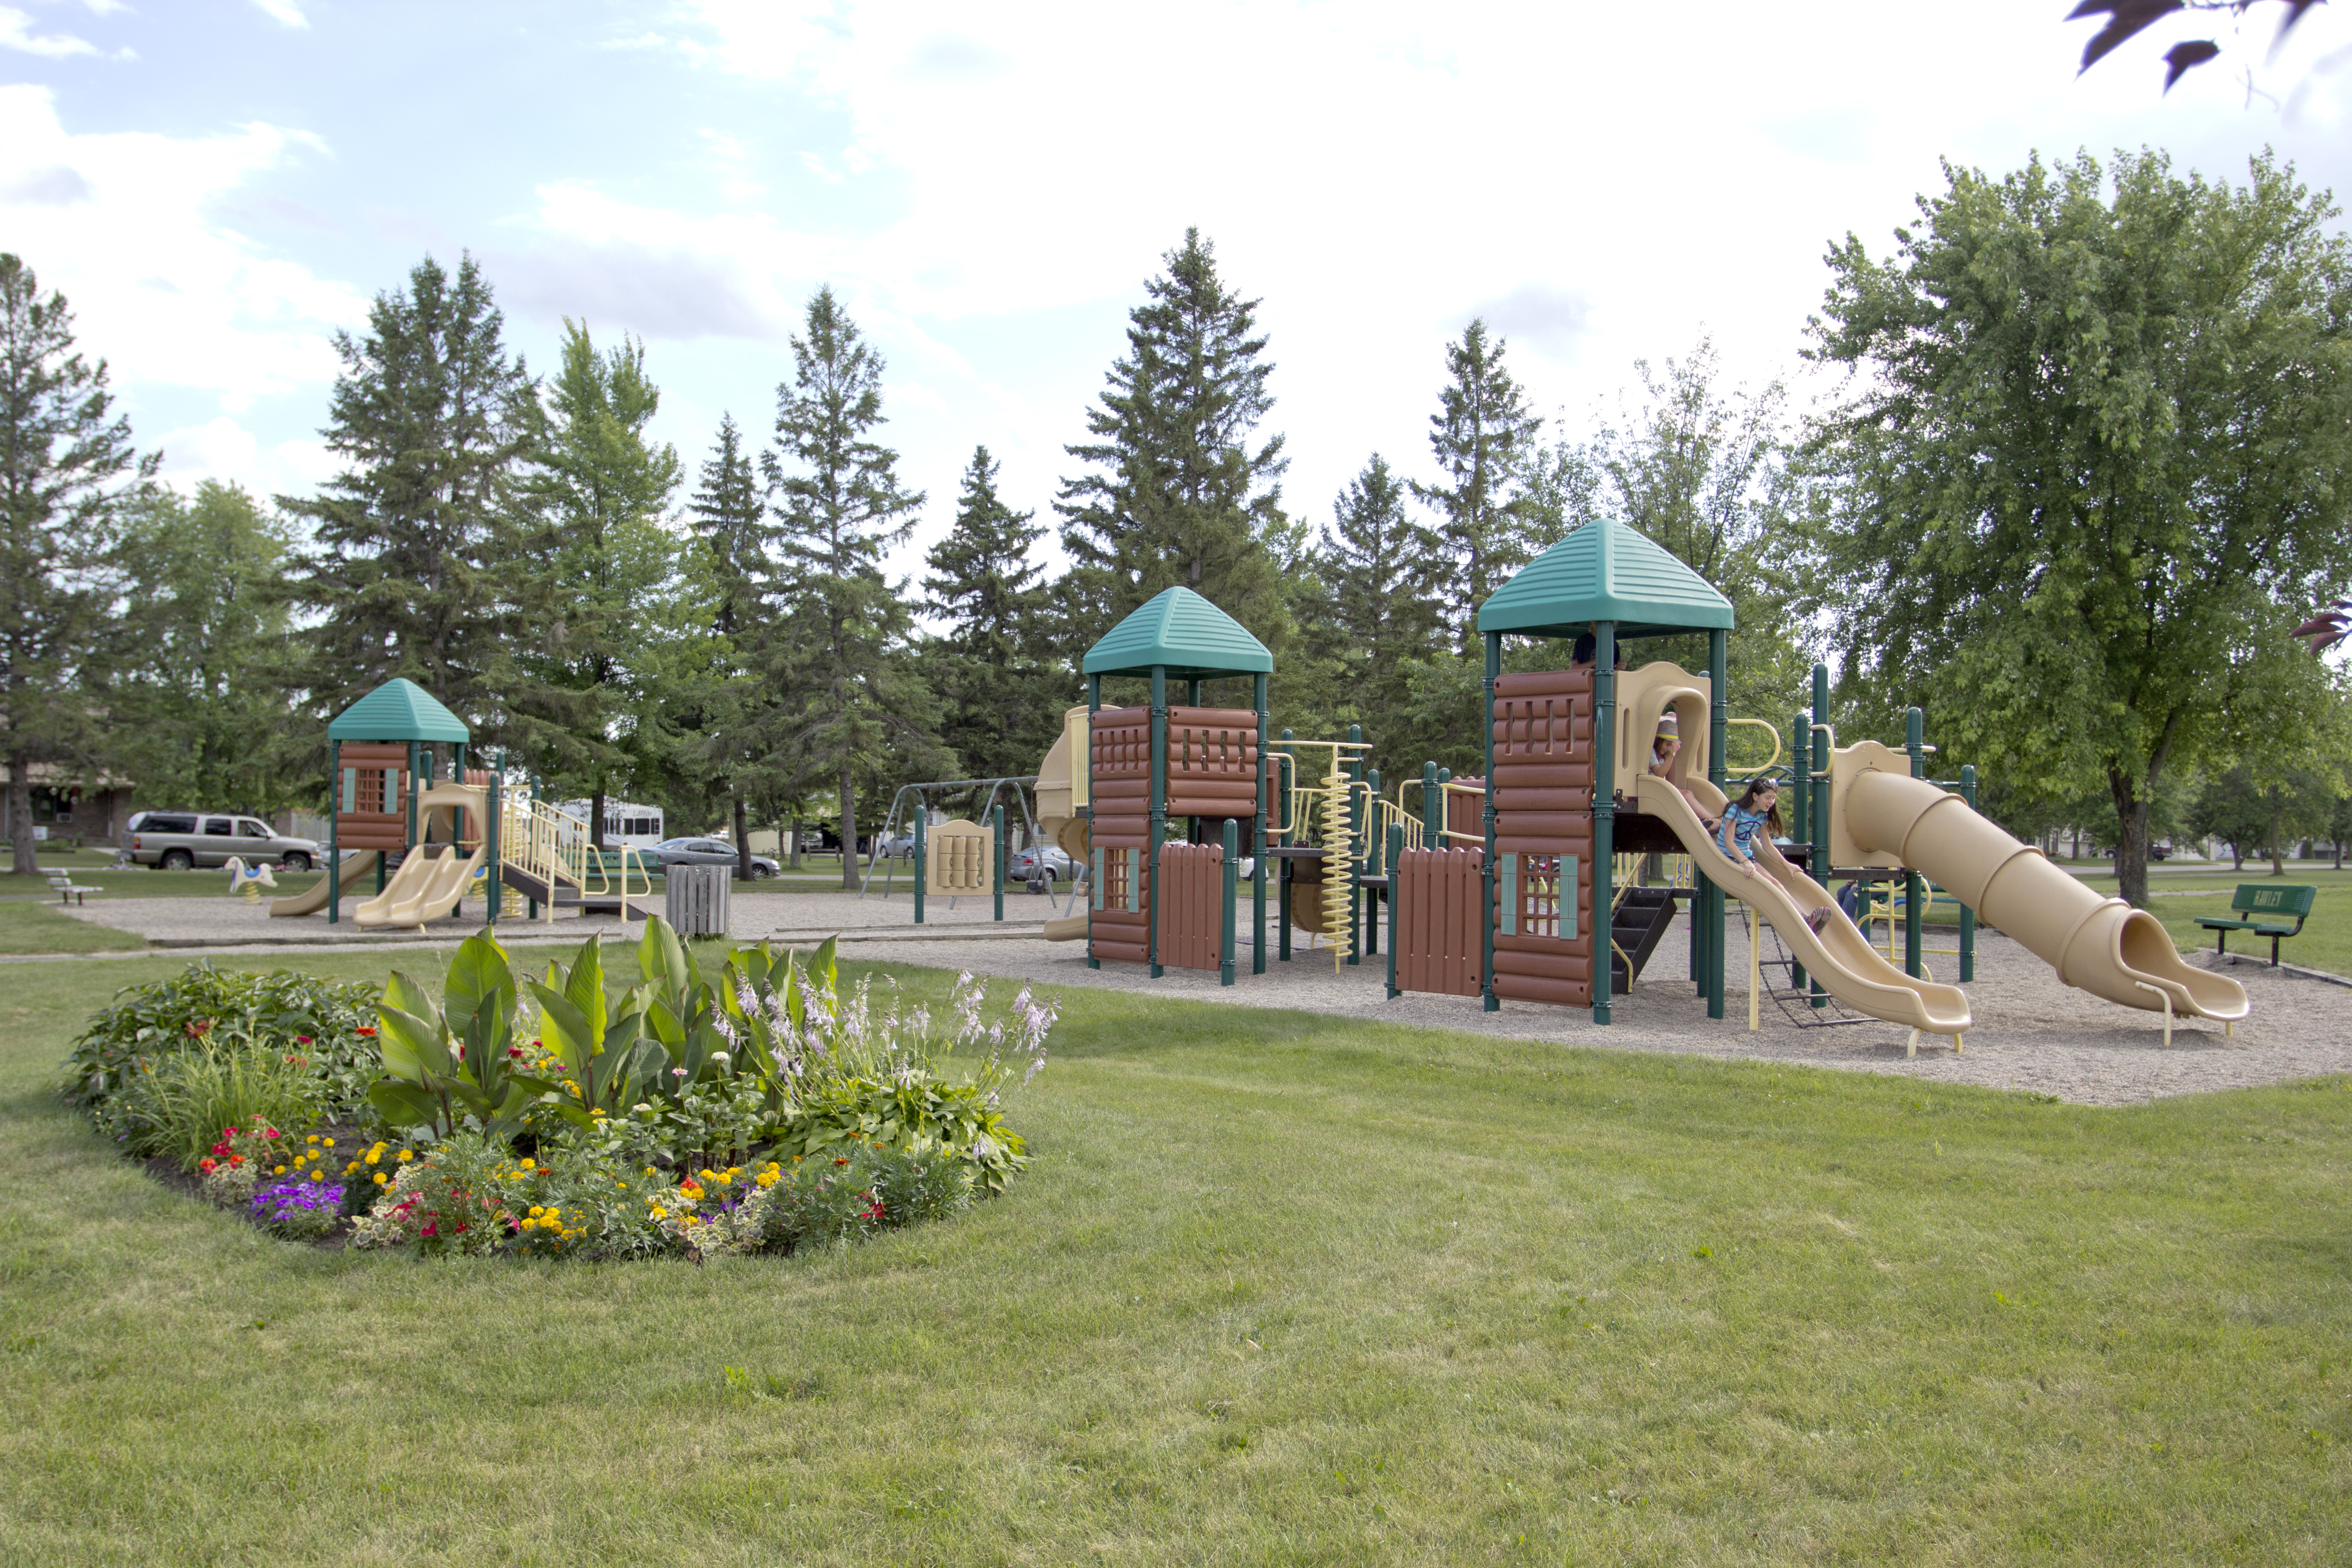 city-park-playground-equipment